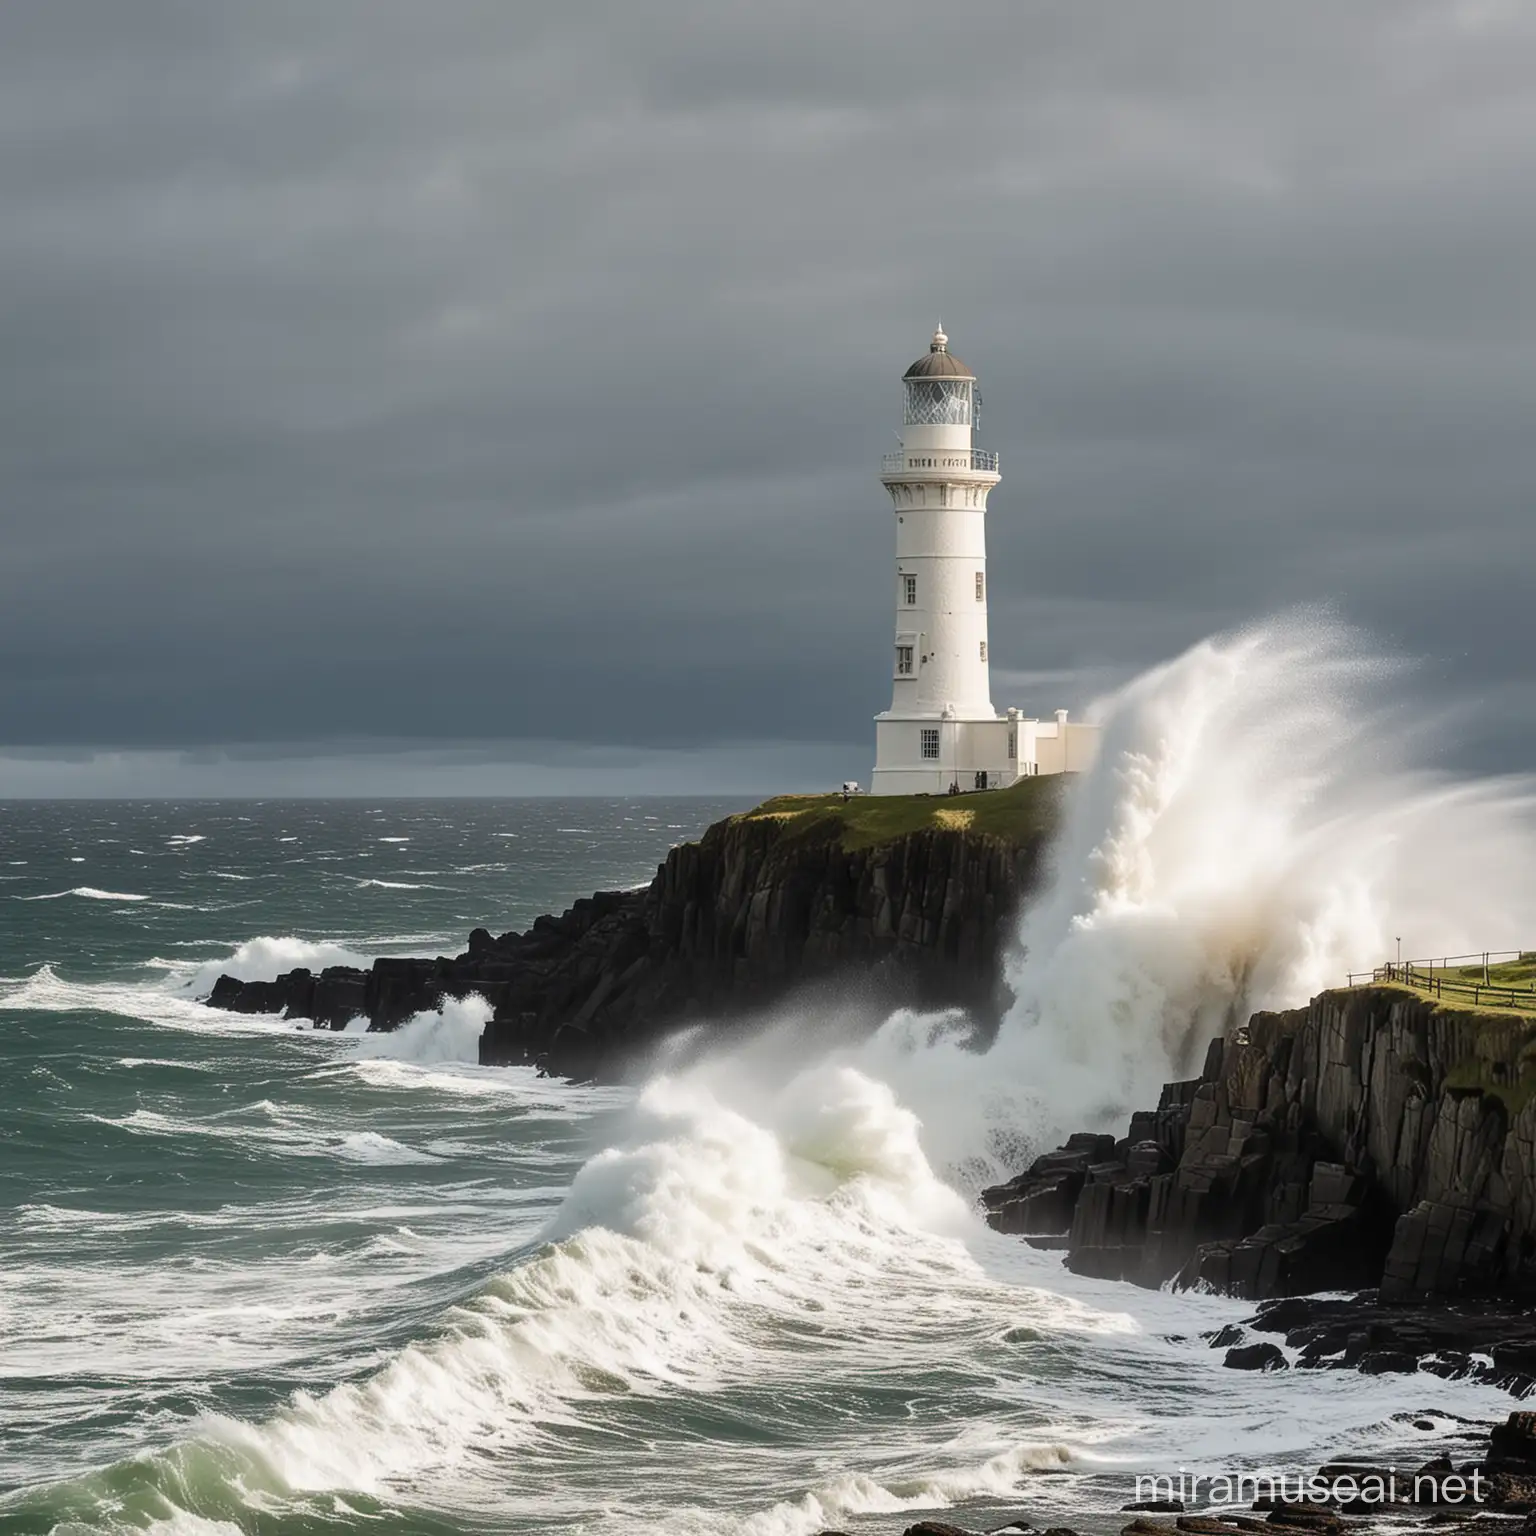 Am Rande einer schottischen Klippe zum Meer steht ein alter historischer Leuchtturm auf ihn kommt eine so große Welle auf ihn zu die fast größer ist als der Leuchtturm selber doch der Leuchtturm bleicht stark stehen 